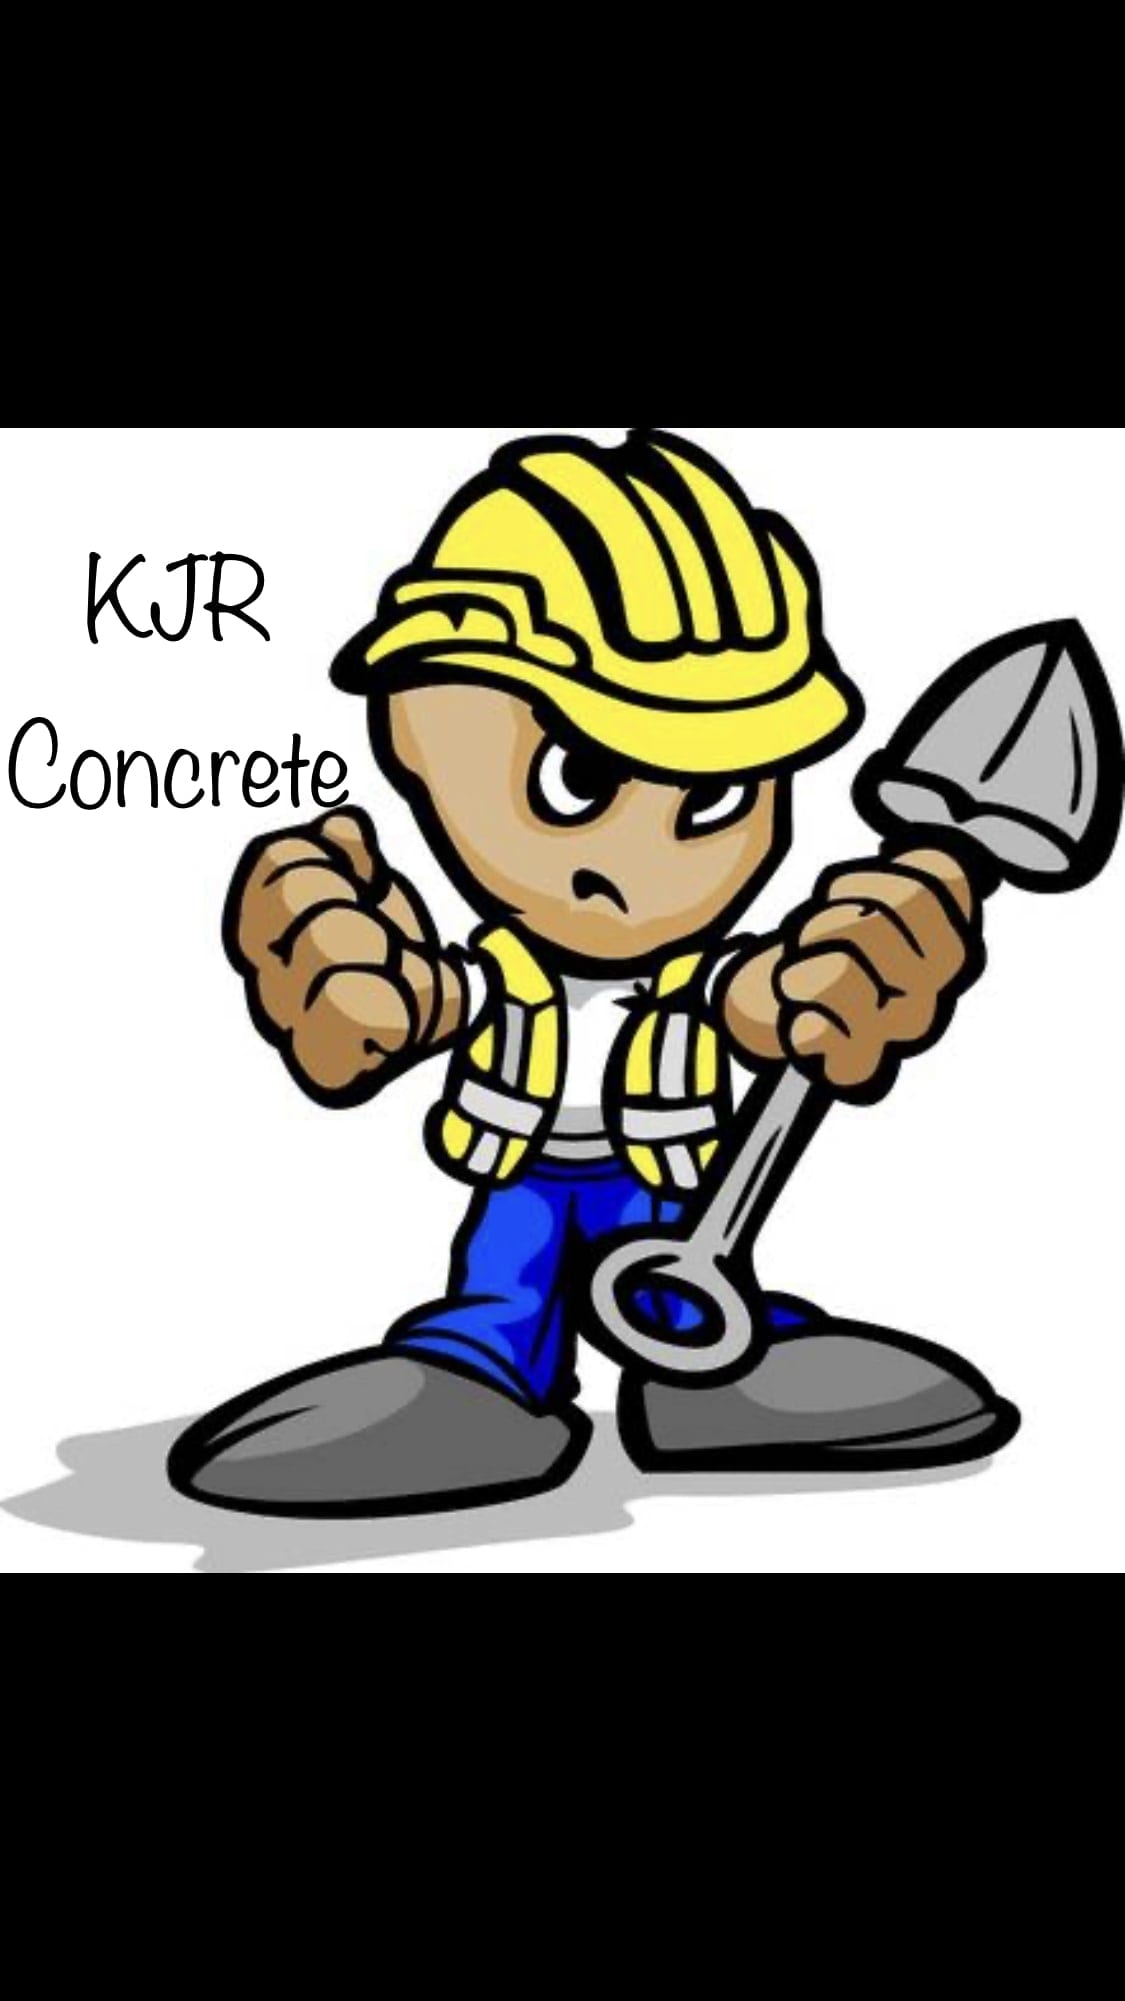 KJR Concrete